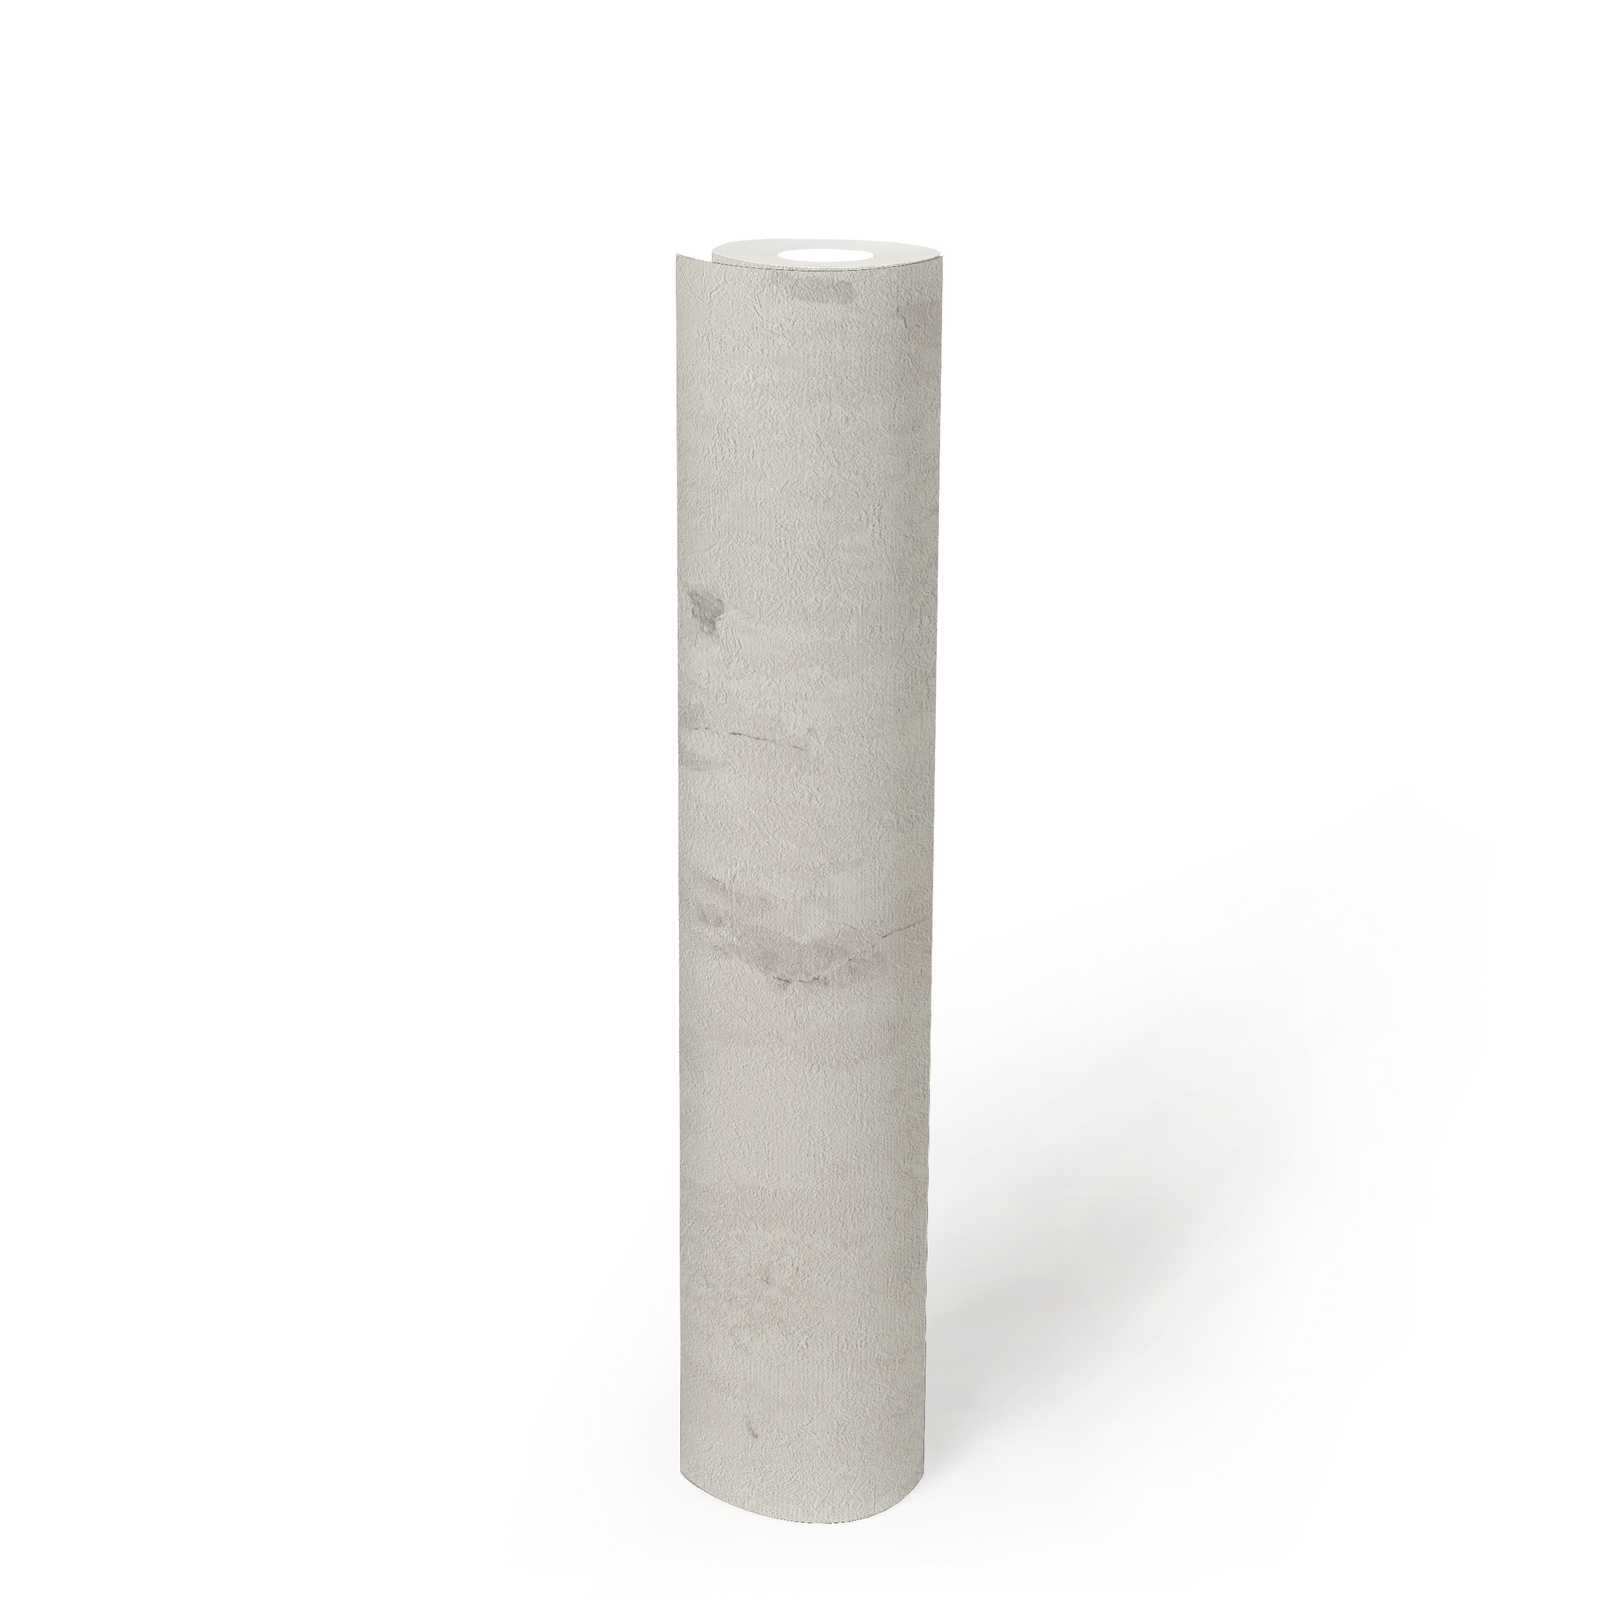             Papel pintado no tejido con diseño rústico en aspecto usado - crema, gris, blanco
        